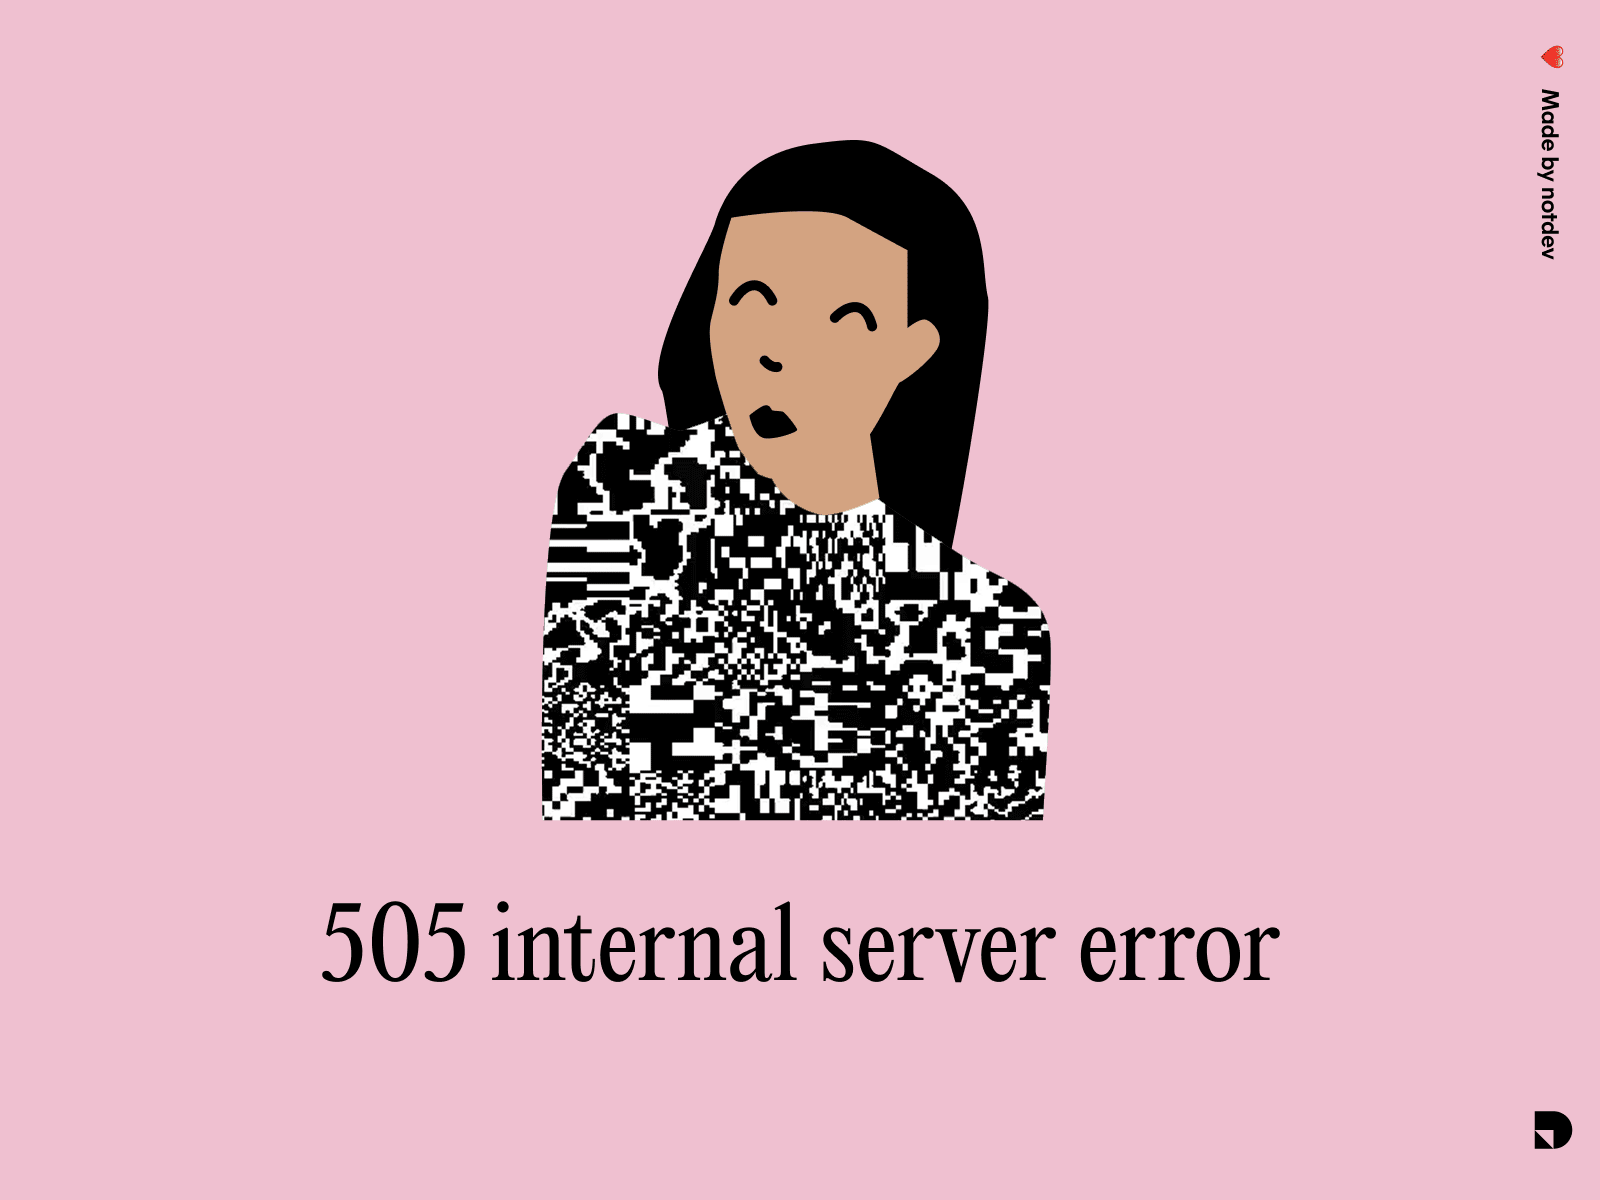 Internal server error branding design illustration meme